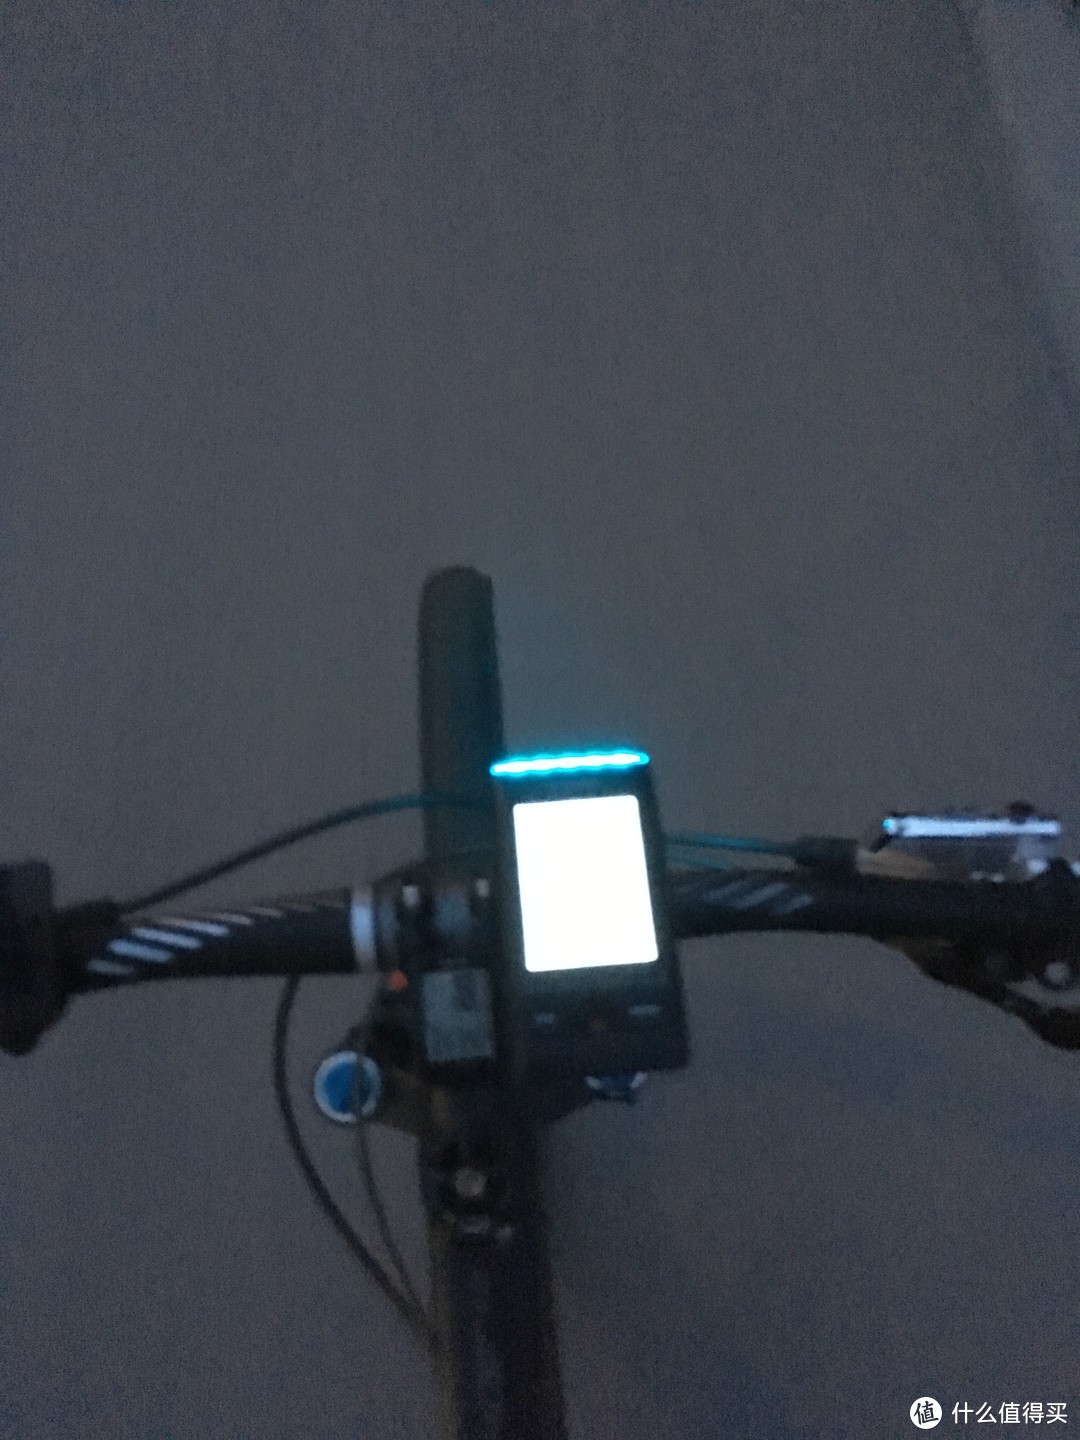 完美解决我的夜骑的刚需 - 山人 Discovery 码灯 测评